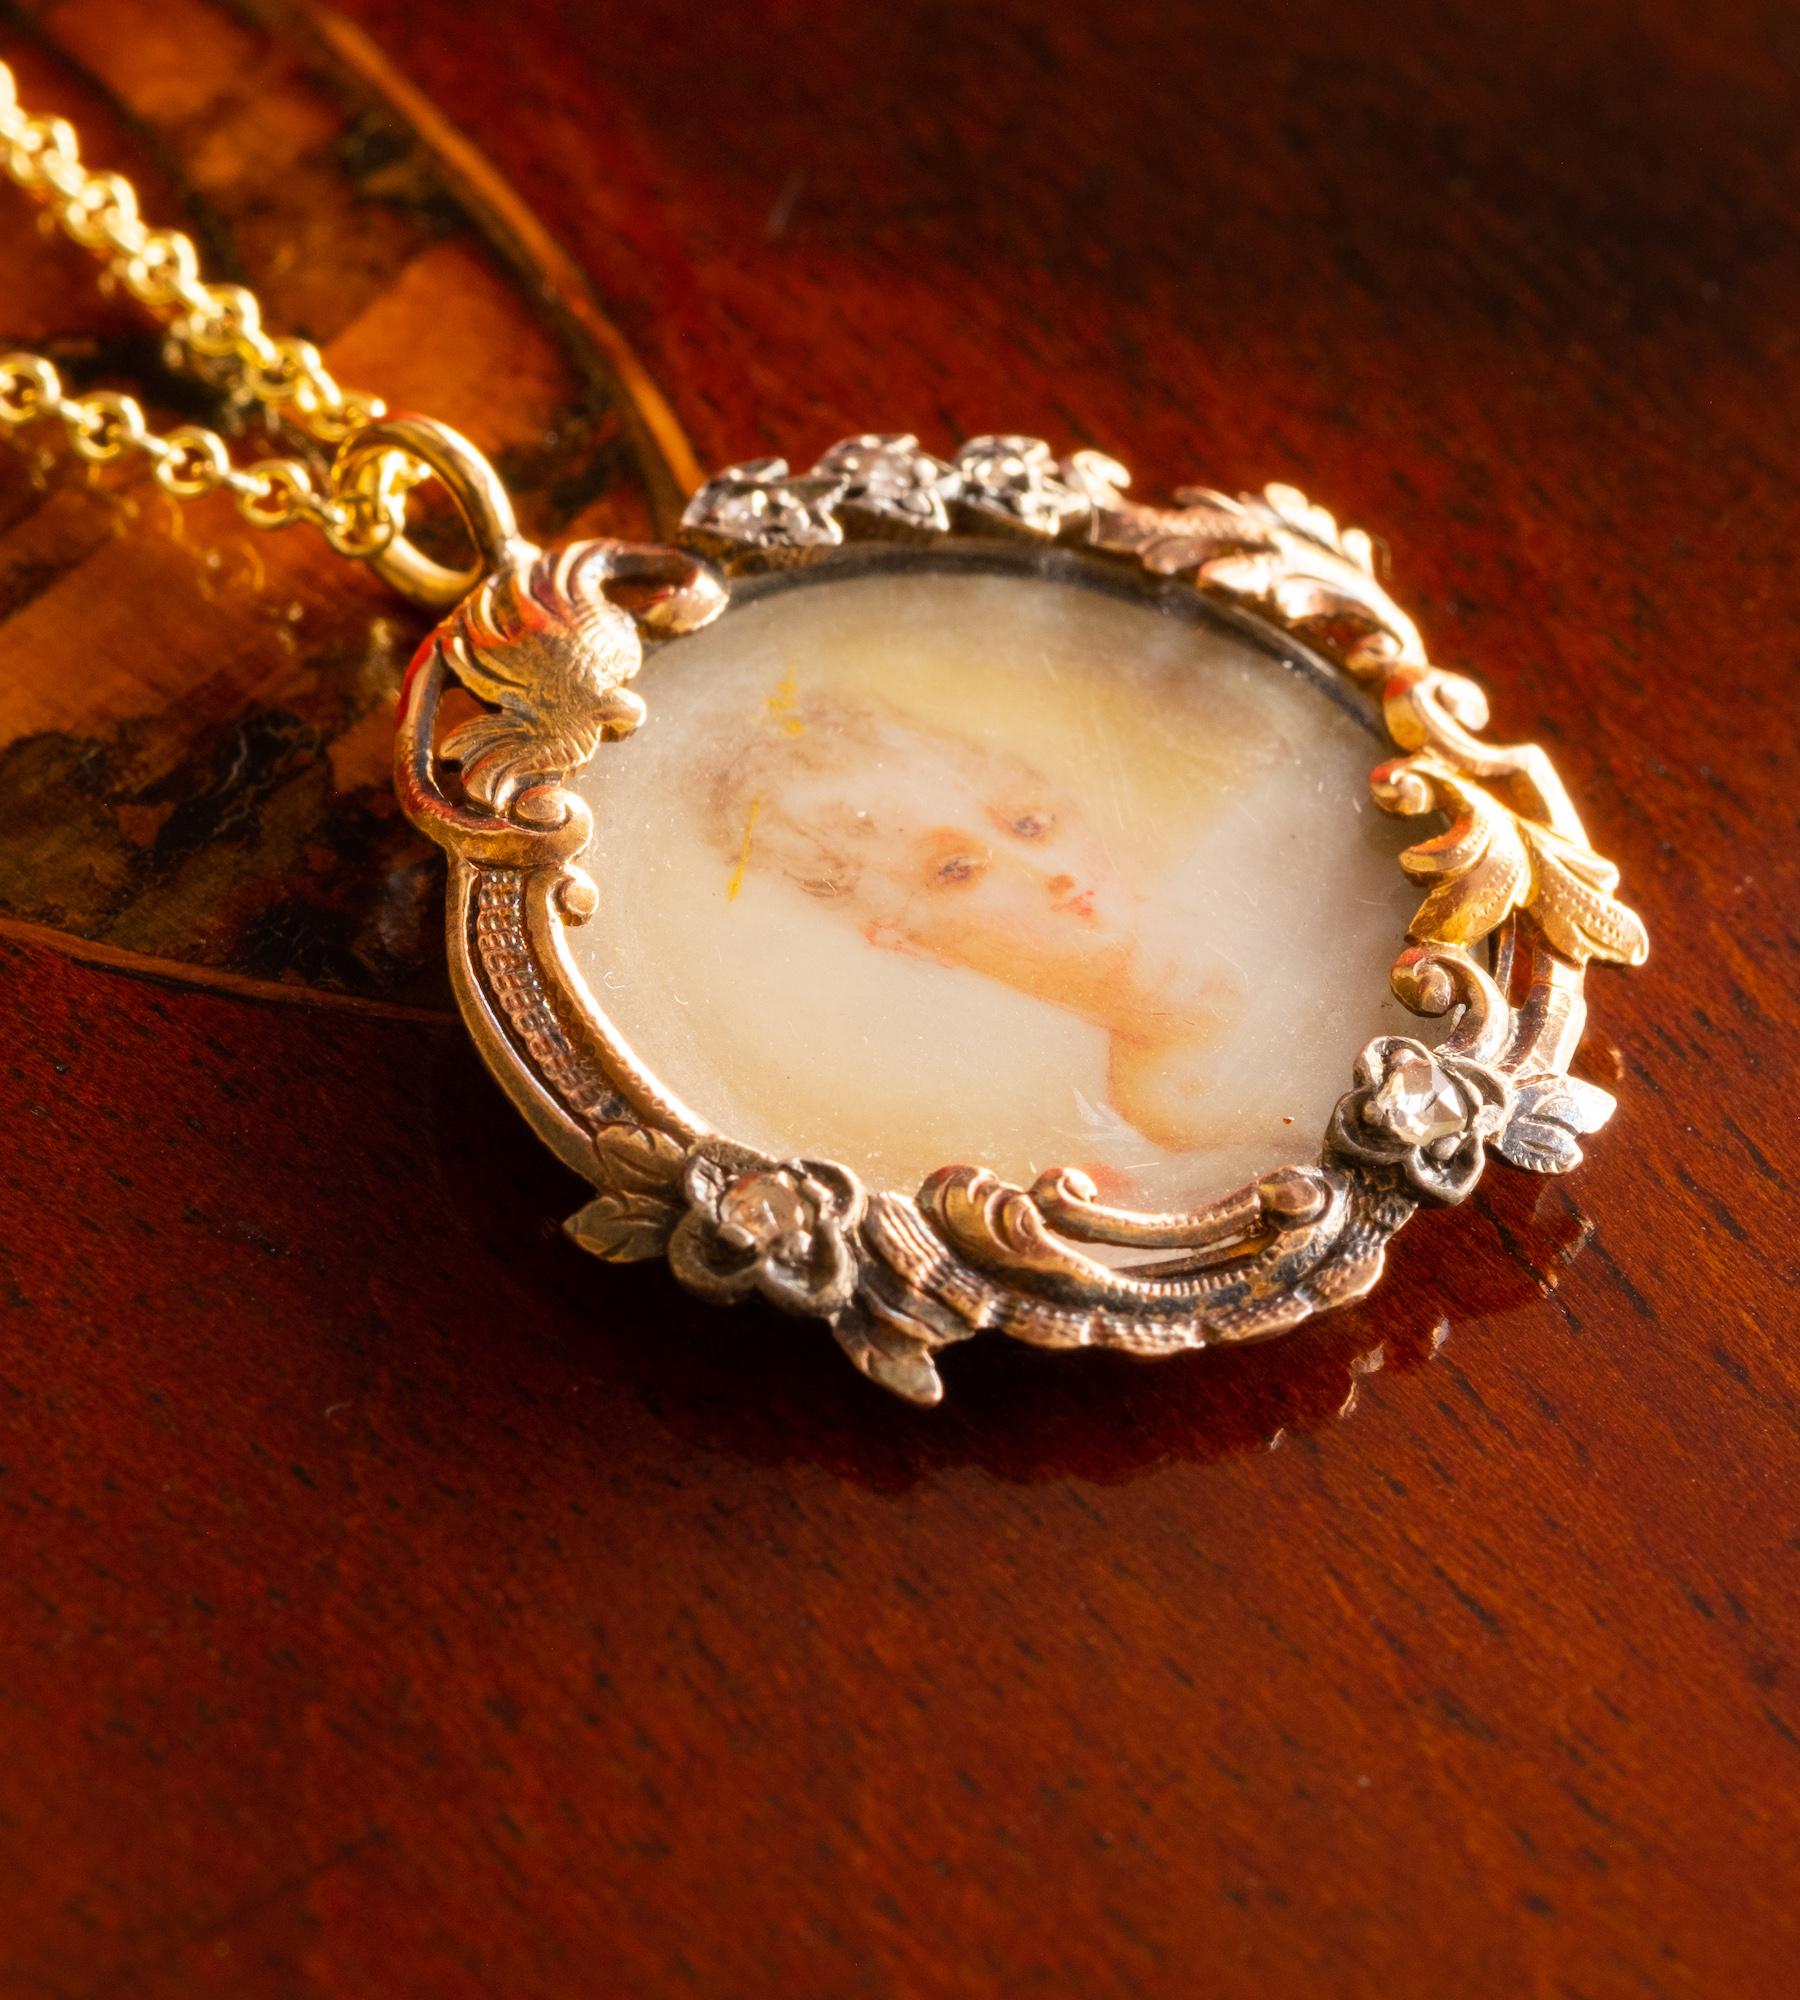 Eine seltene und elegante späte georgianische Porträt Miniatur Medaillon Anhänger, mit fünf alten geschliffenen Diamanten in einem floralen Motiv besetzt und in 9ct Gold gegossen. 
Das Porträt der Dame ist auf Elfenbein gemalt und in Gold gefasst,